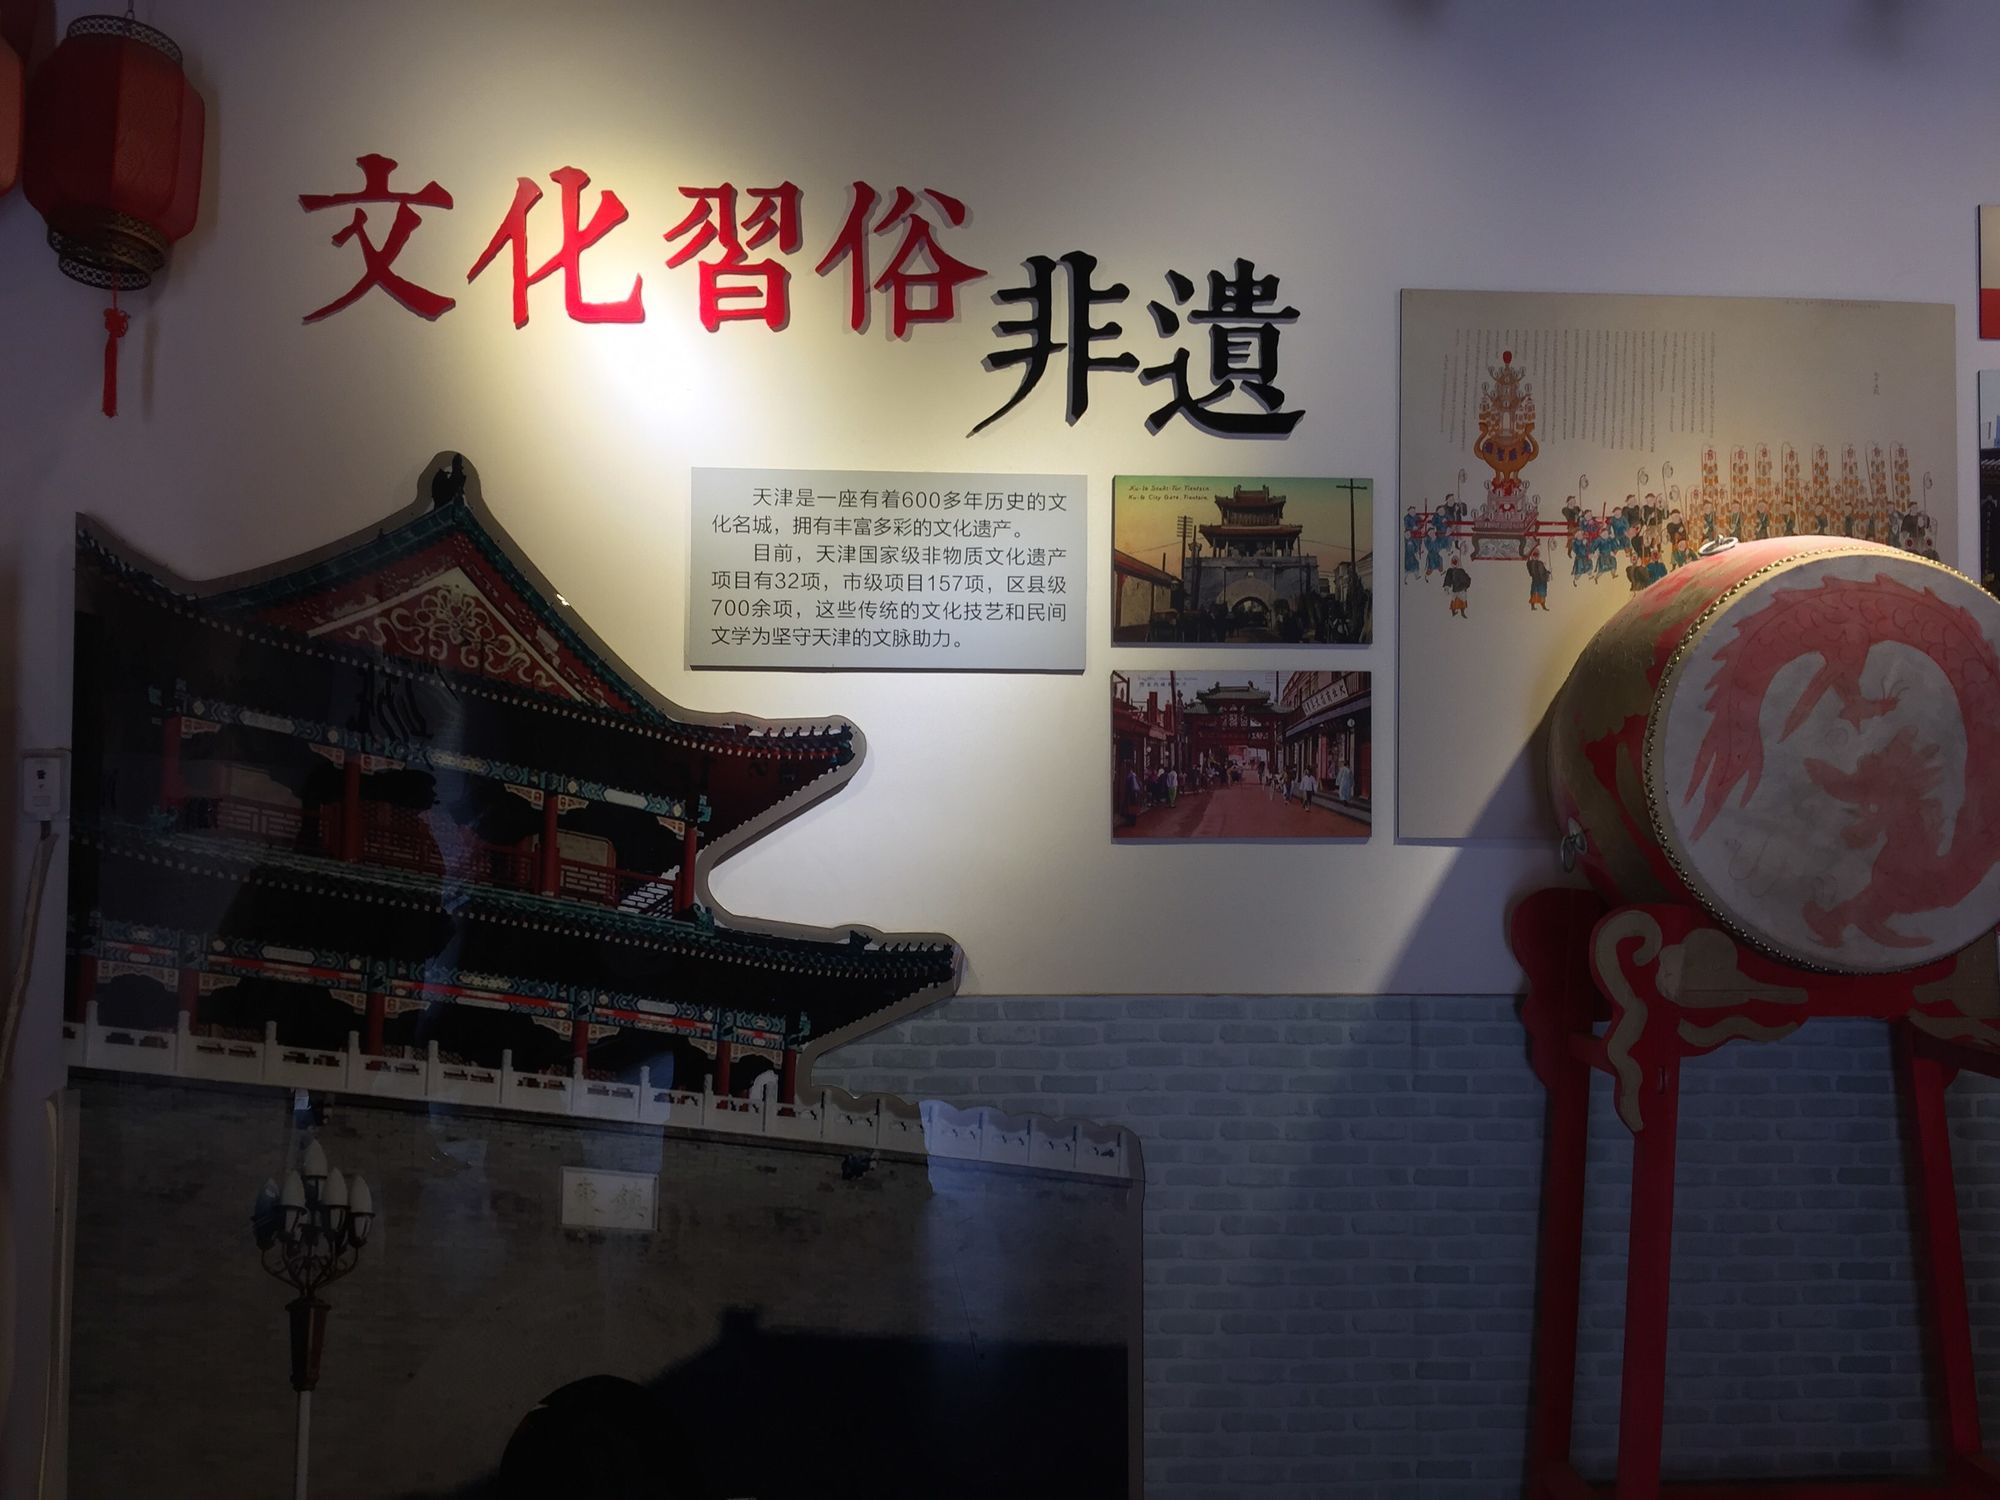 广州民俗博物馆事业的发展和建设：民间民俗风情